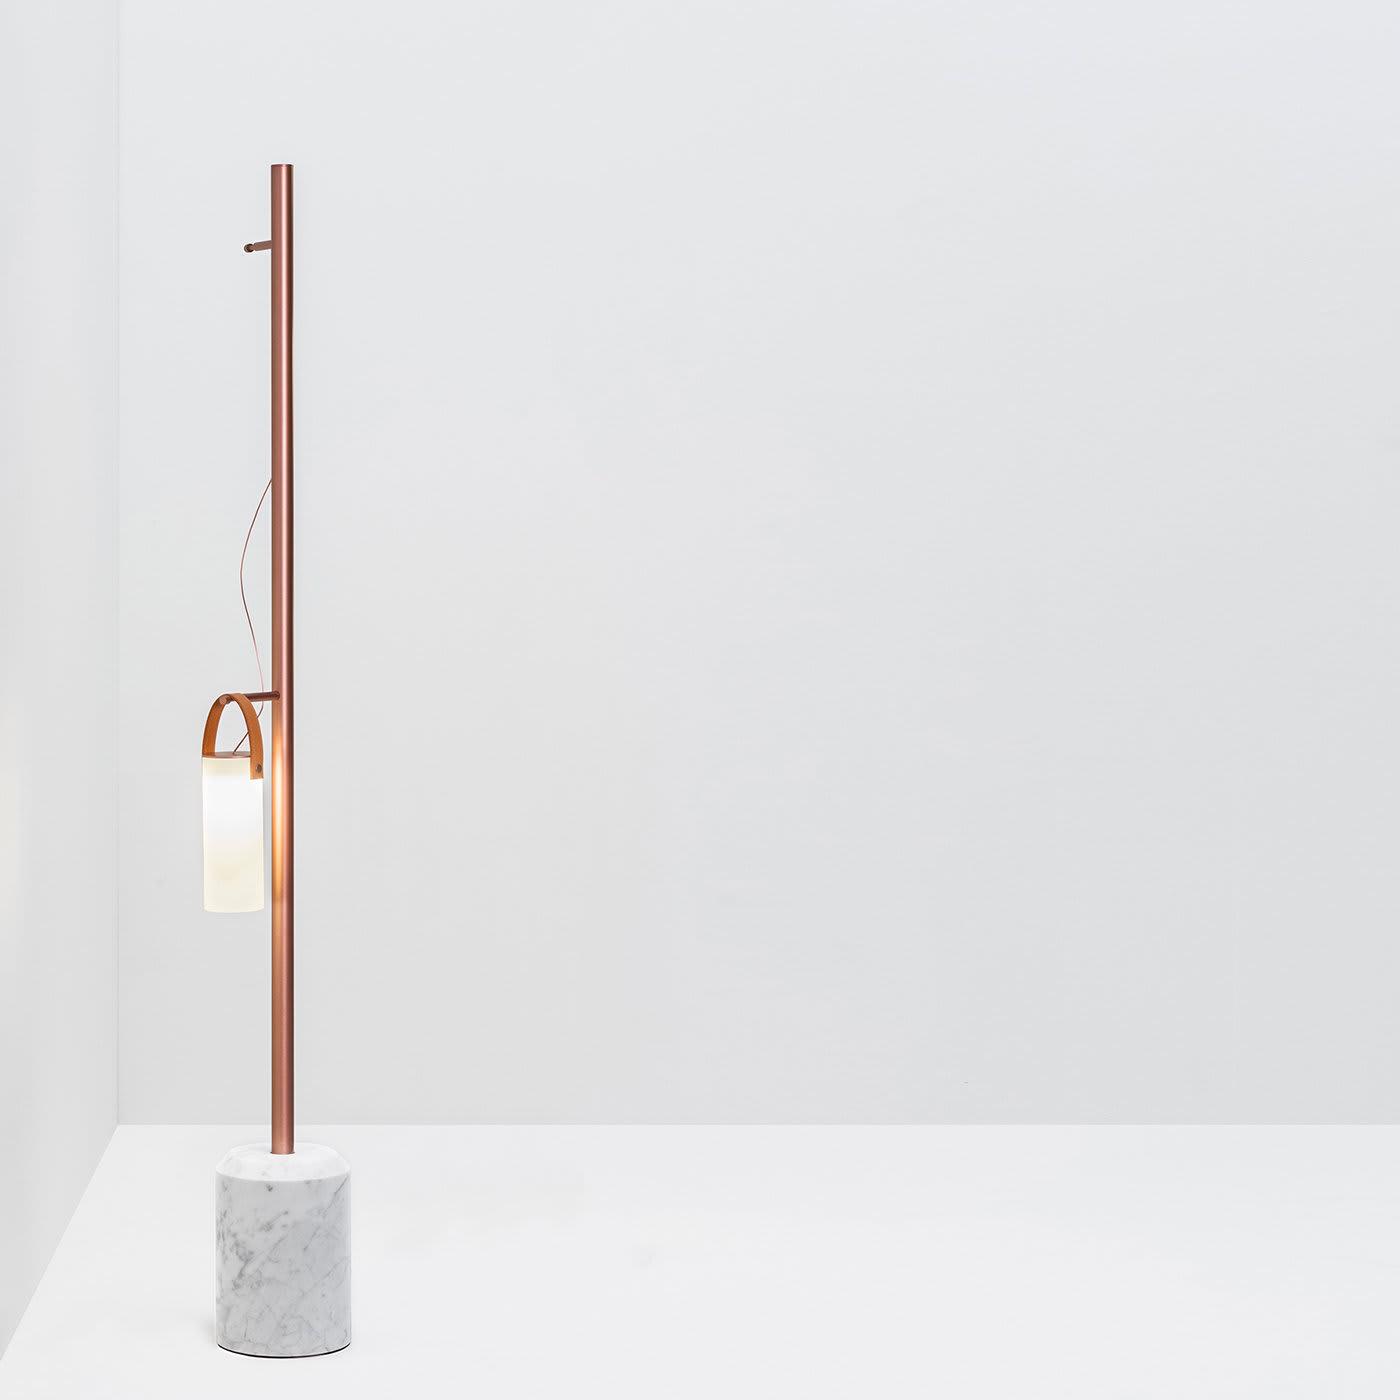 Galerie 1-Diffuser Floor Lamp by Federico Peri - FontanaArte